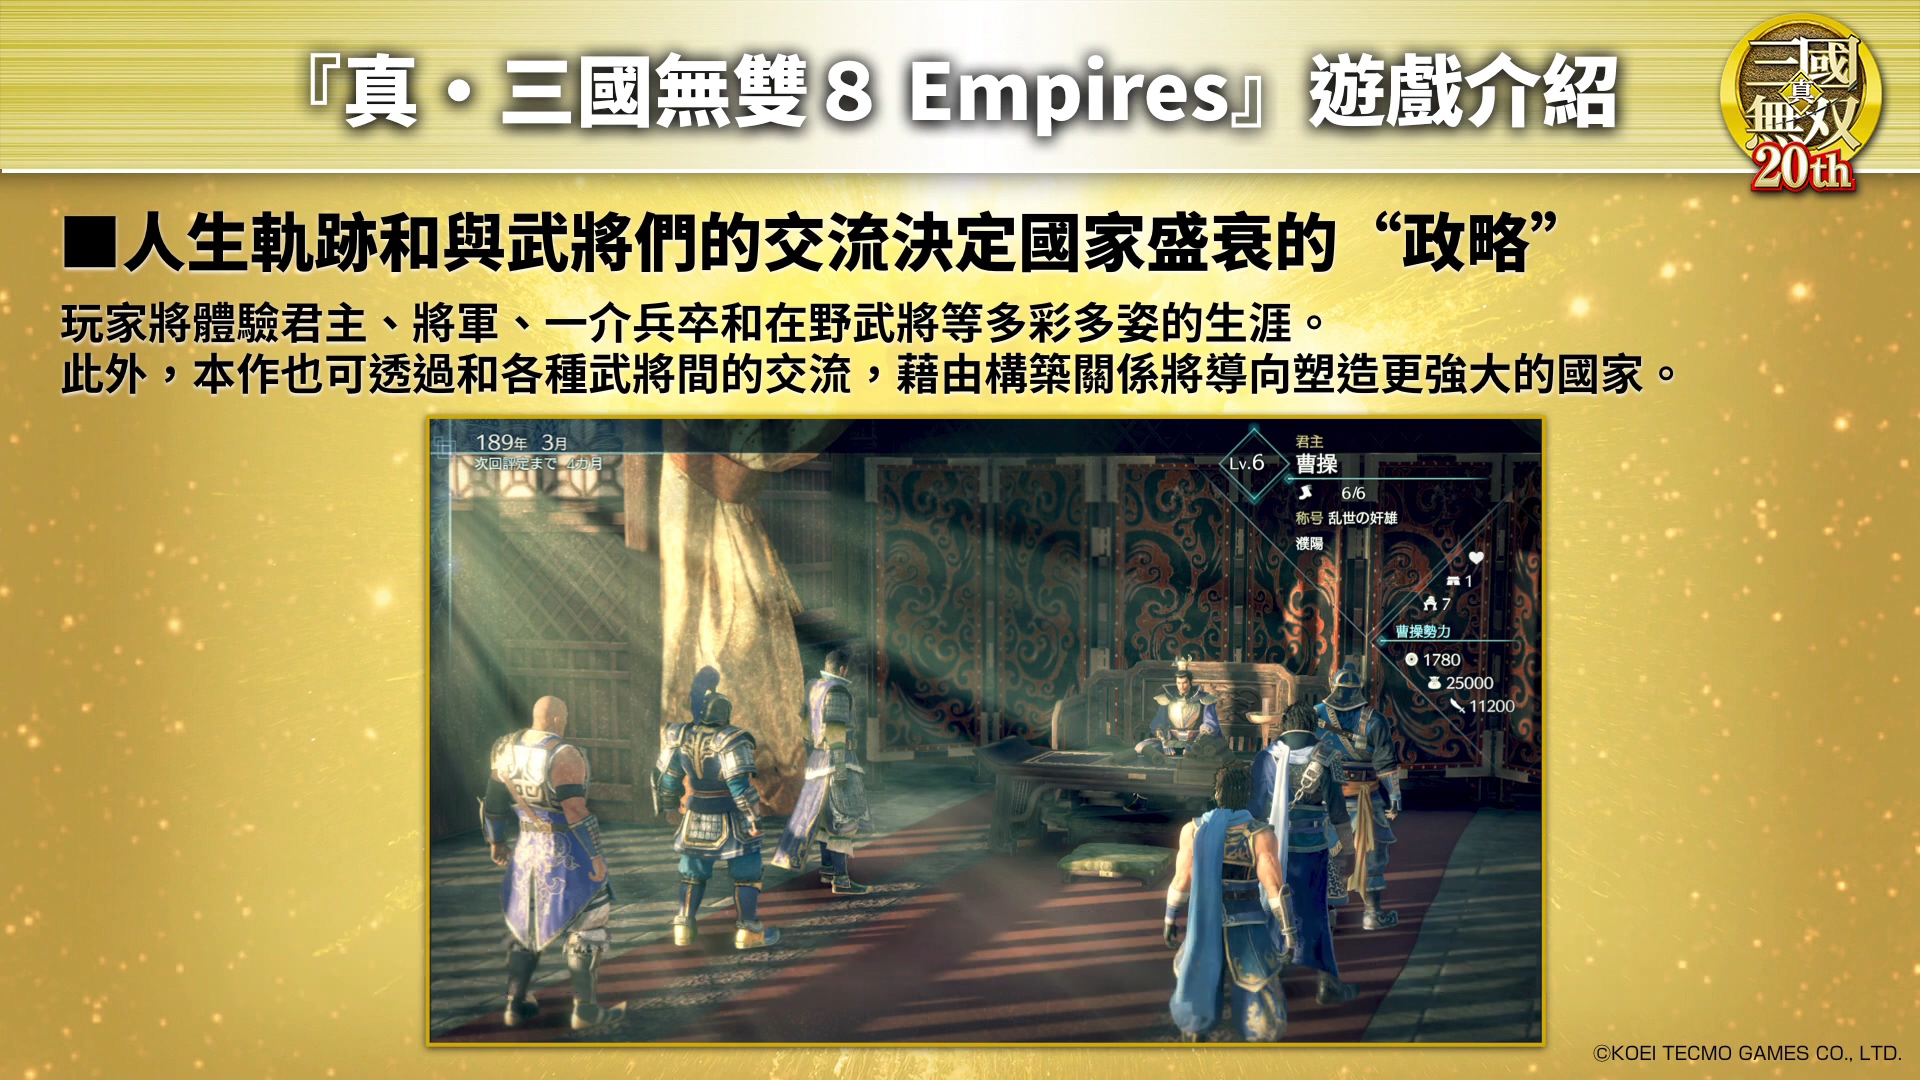 光榮發布中文字幕版《真・三國無雙8 Empires》介紹視頻